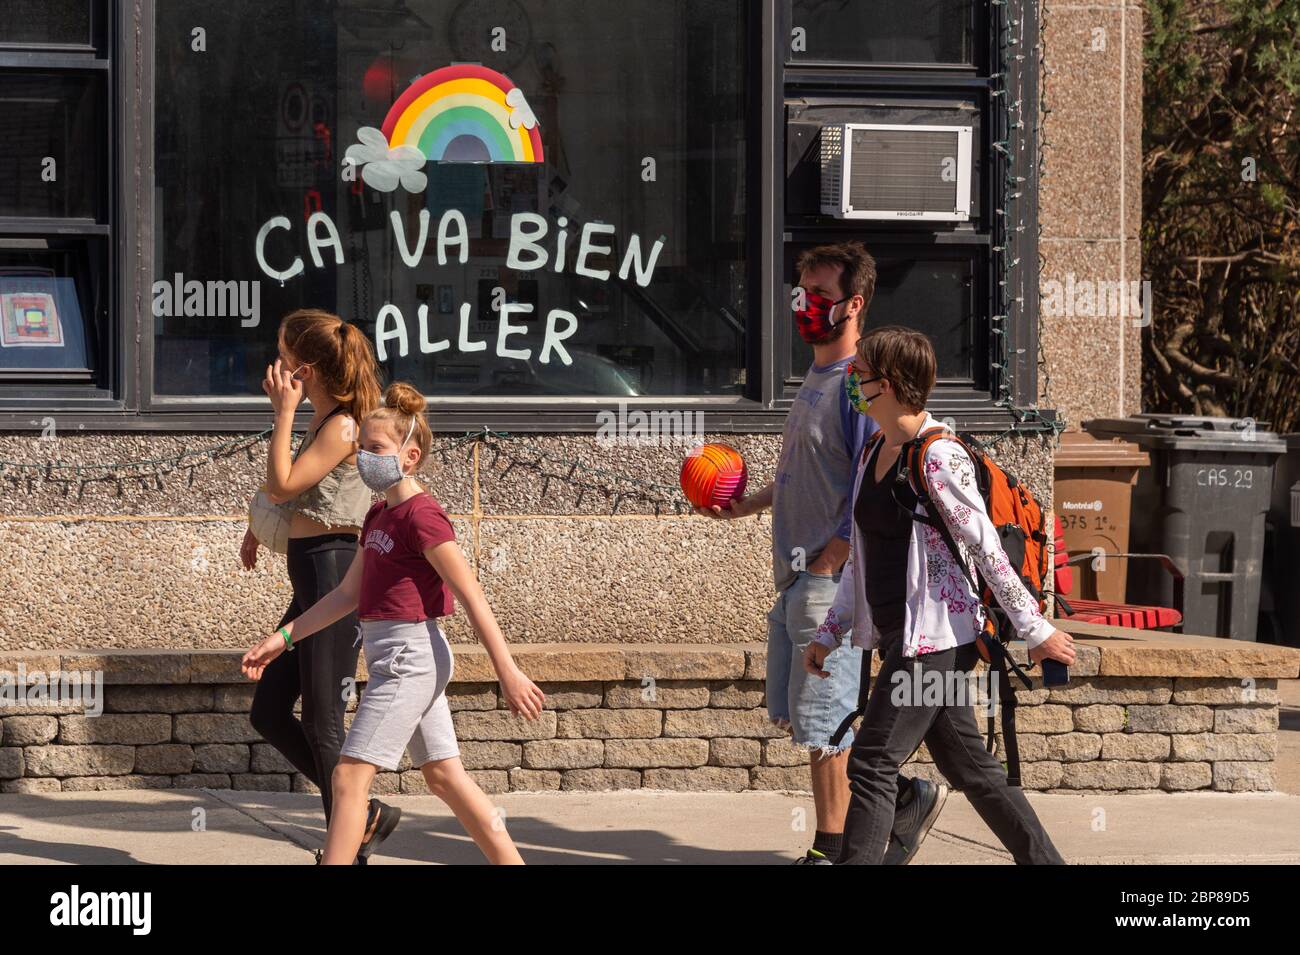 Montreal, CA - 17 de mayo de 2020: Familia con máscaras para la protección contra COVID-19 caminando frente al arco iris dibujando en la calle Masson. Foto de stock